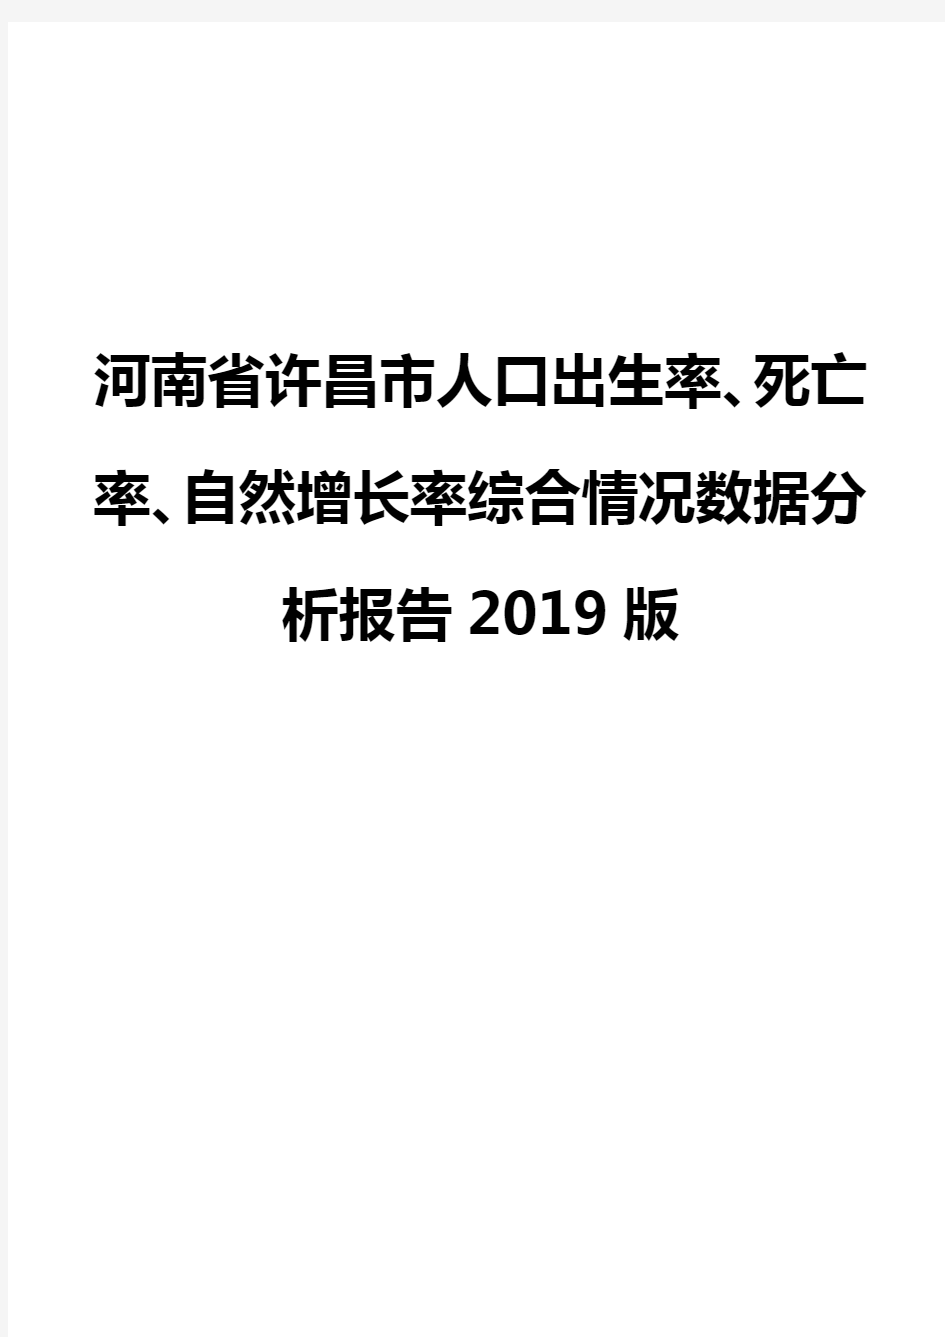 河南省许昌市人口出生率、死亡率、自然增长率综合情况数据分析报告2019版